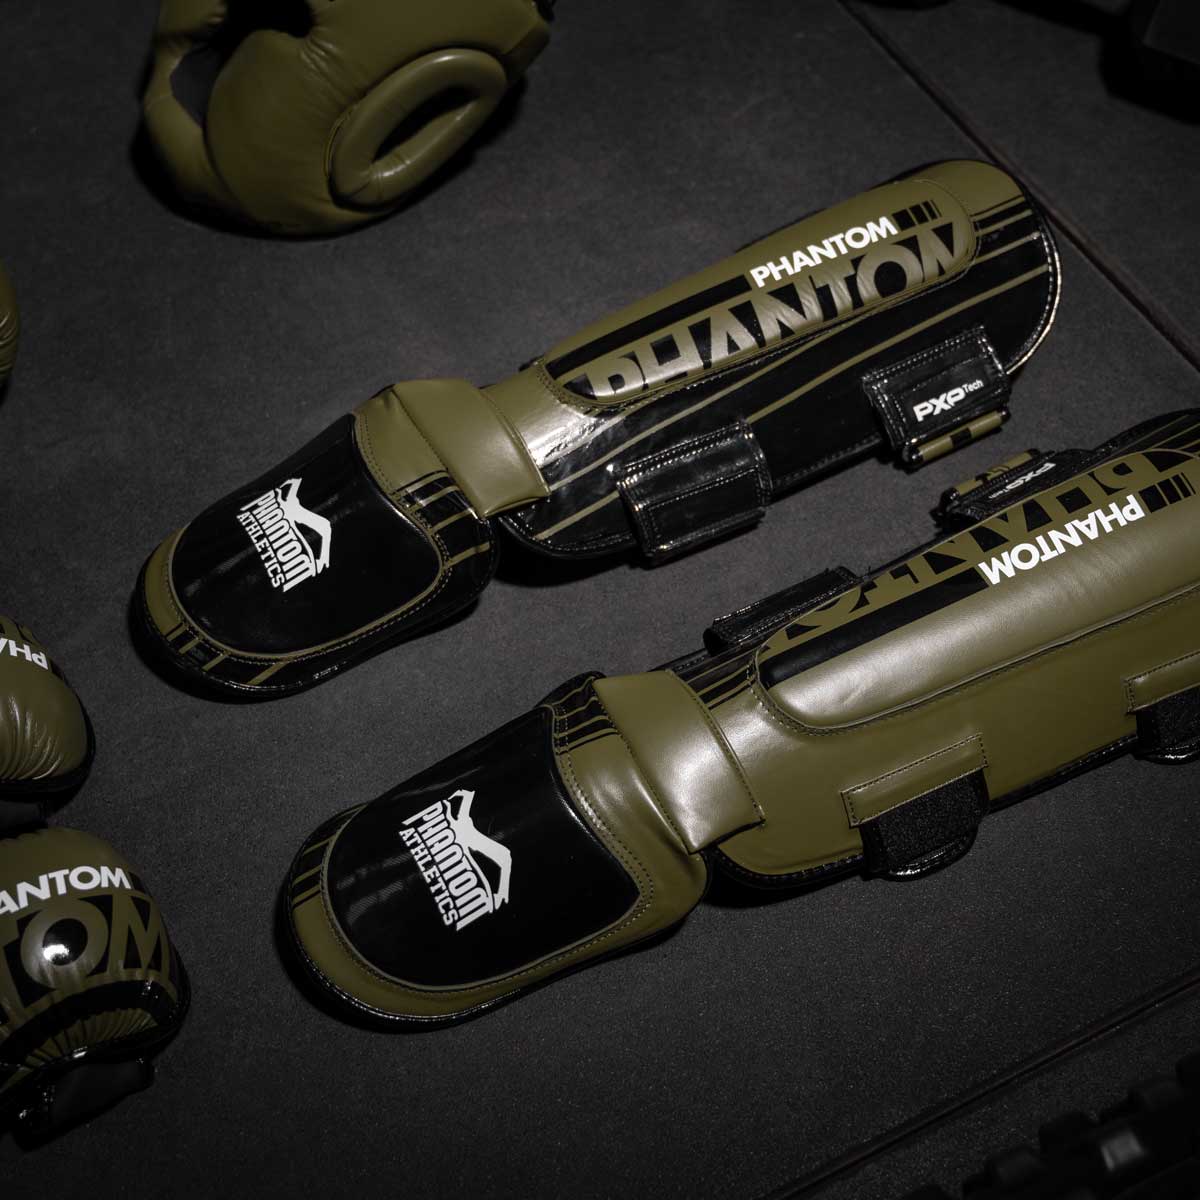 Die army grünen Phantom Apex Hybrid Schienbeinschoner am Gymboden neben dem Kopfschutz und MMA Handschuhen.